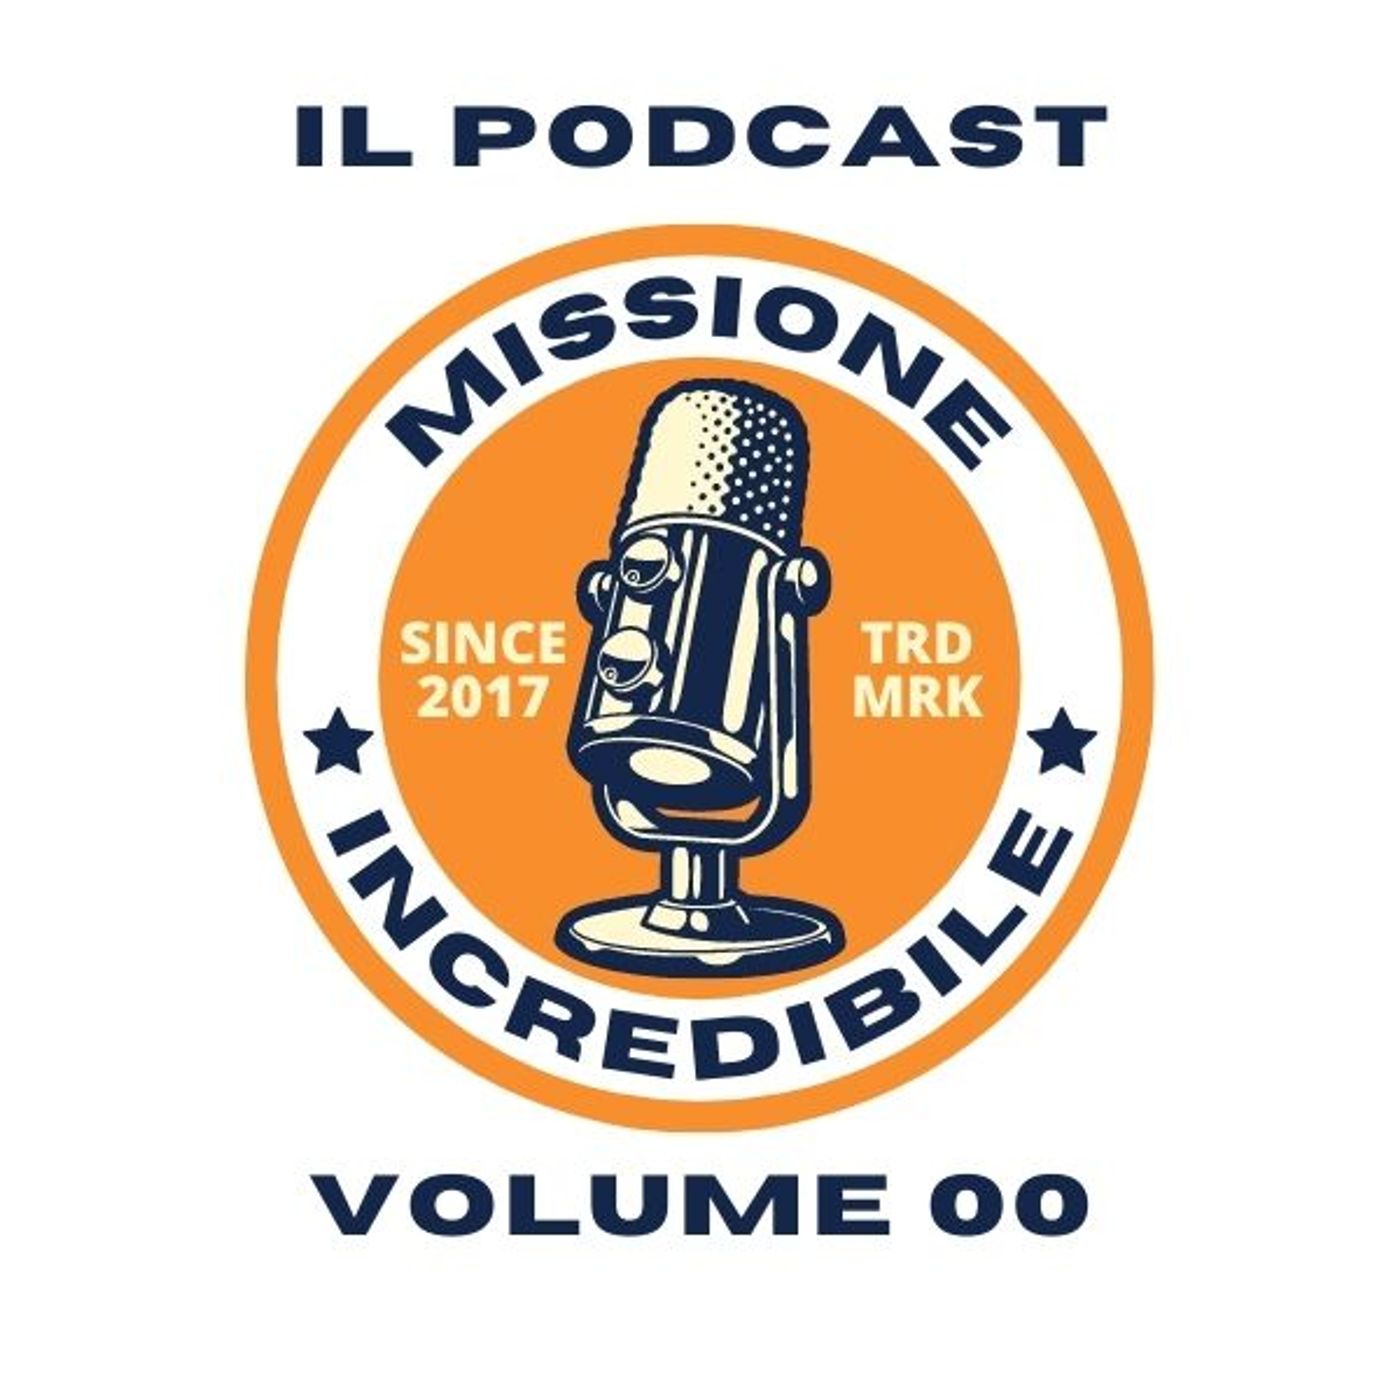 Missione Incredibile, il Podcast, Volume 00